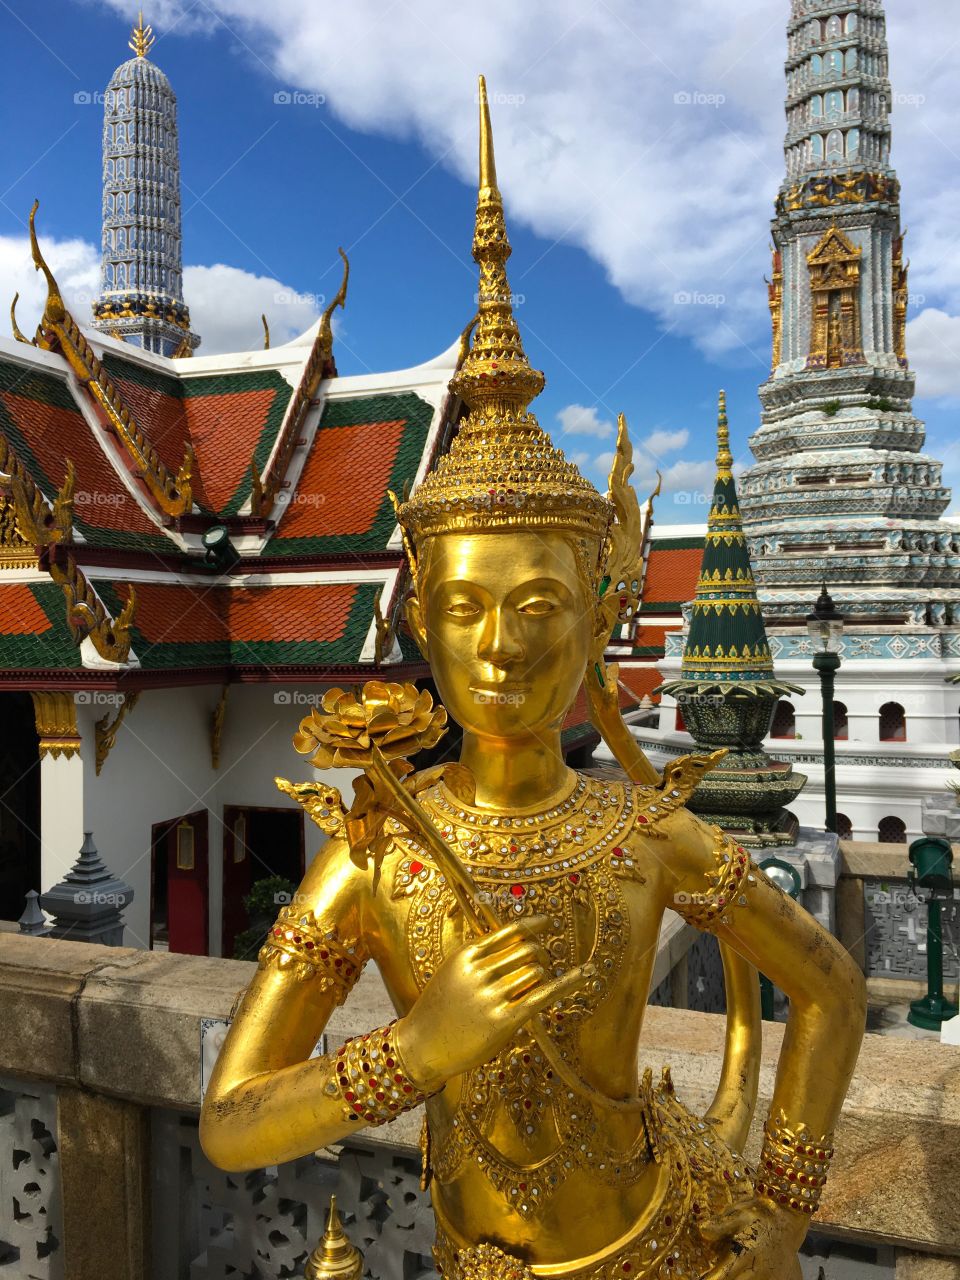 Grand Palace / Bangkok Thailand 66